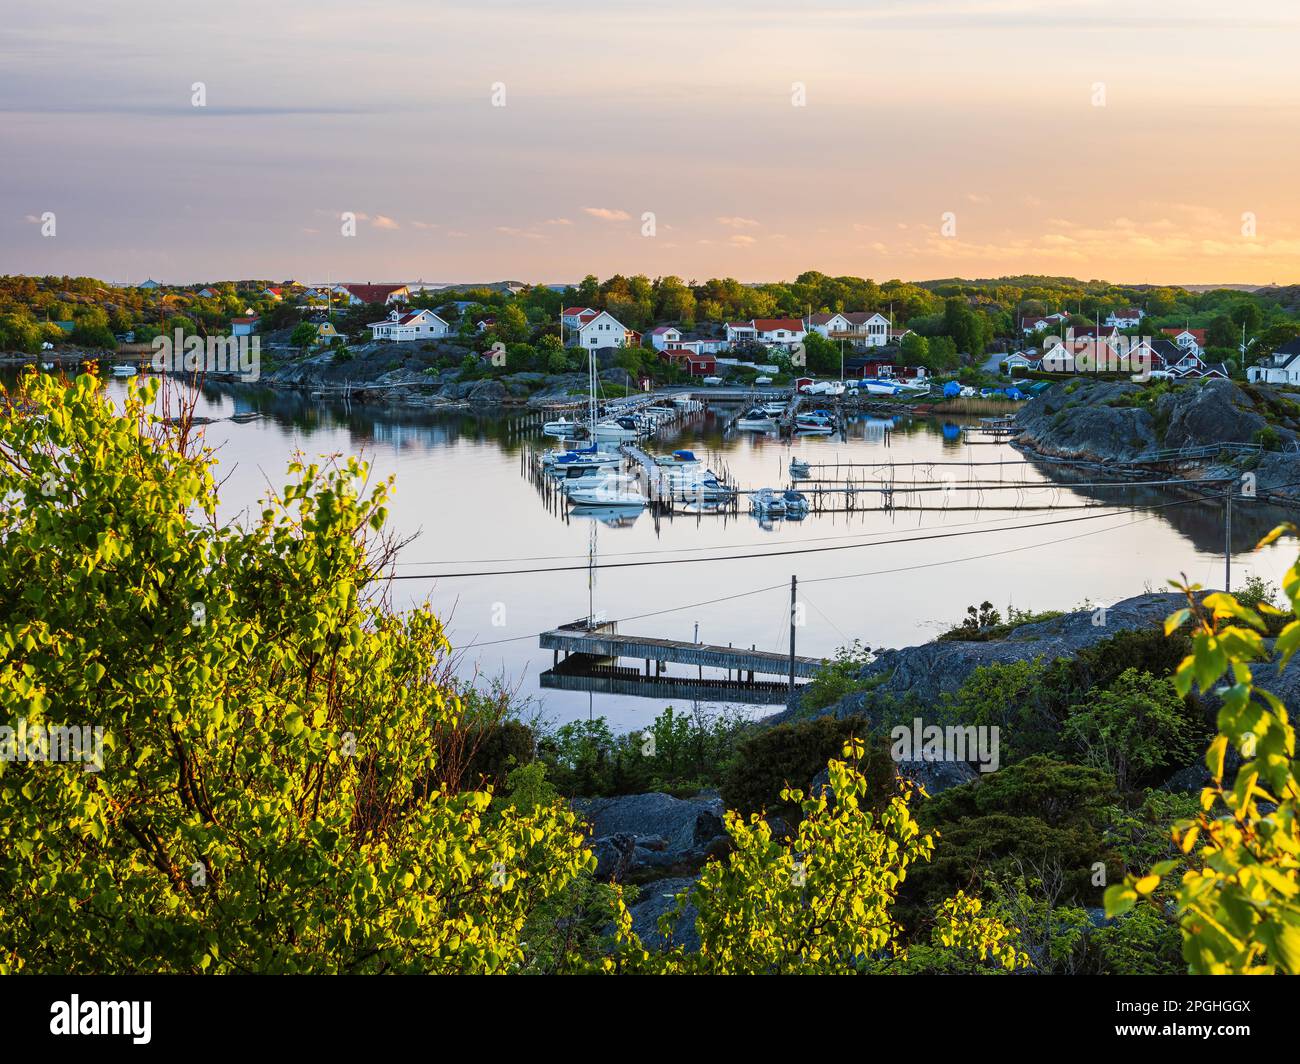 Eine ruhige Sommerszene eines Hafens in Schweden, mit Booten, die friedlich am Flussufer vor dem Hintergrund üppiger Pflanzen und Gebäude ruhen. Stockfoto